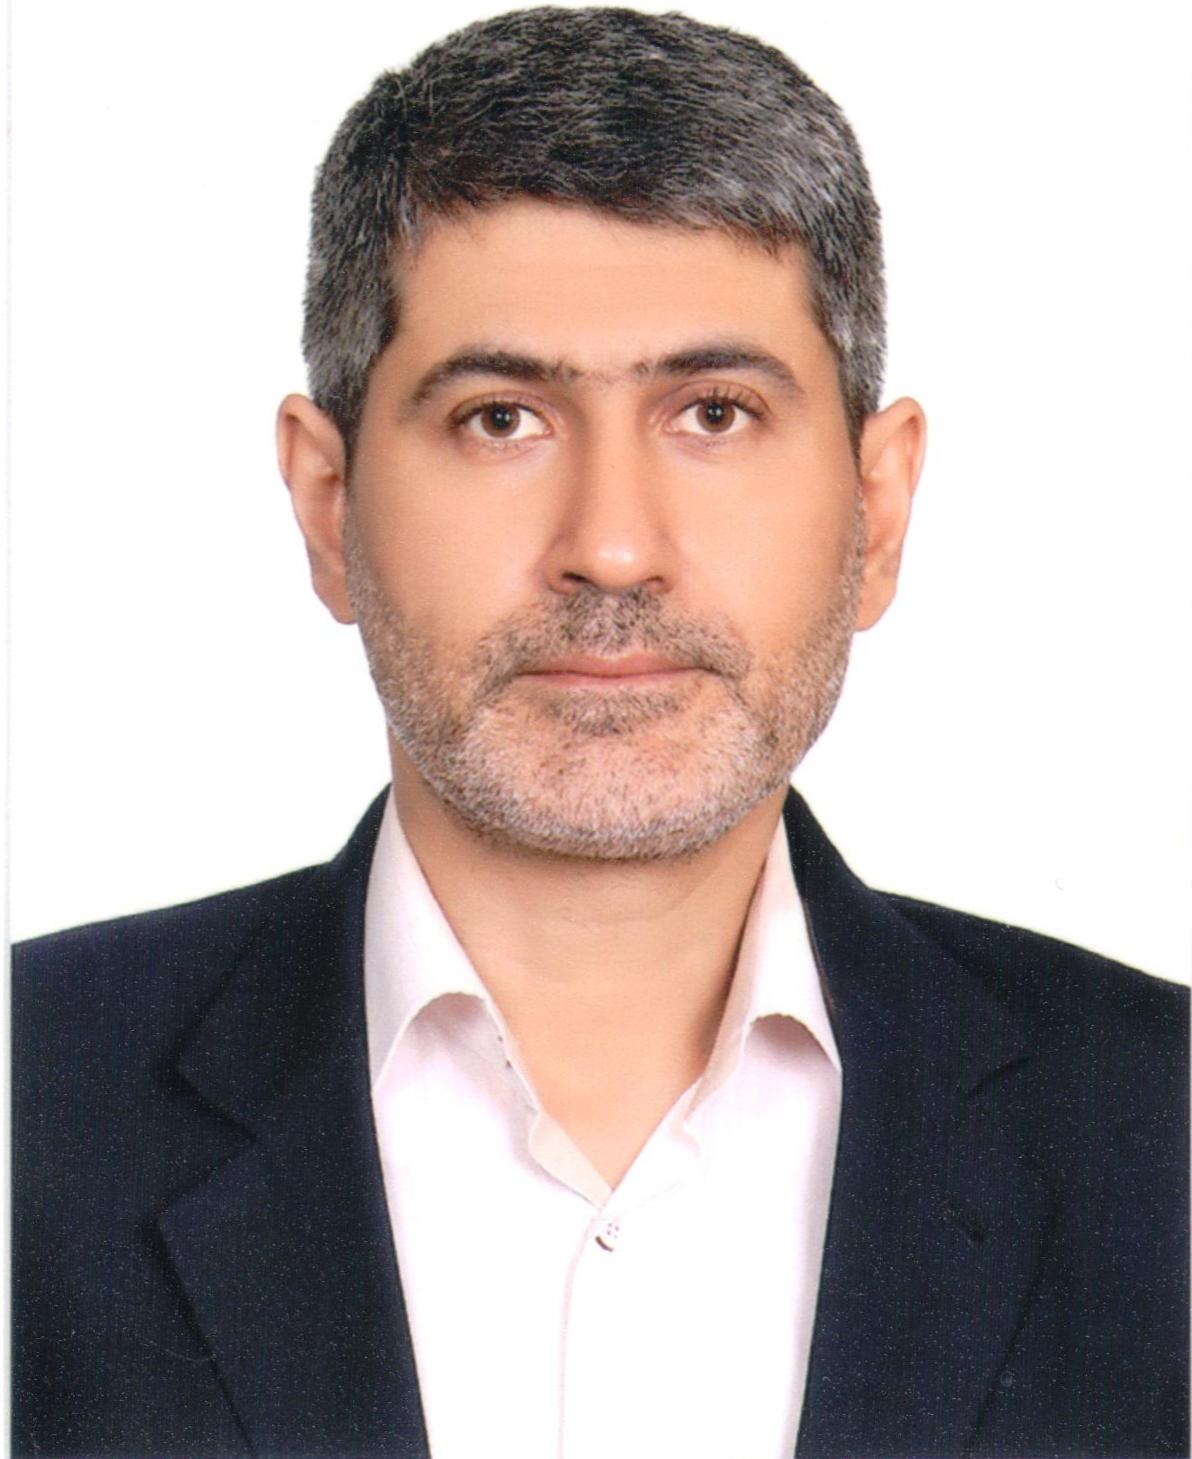 Ahmad Asgari